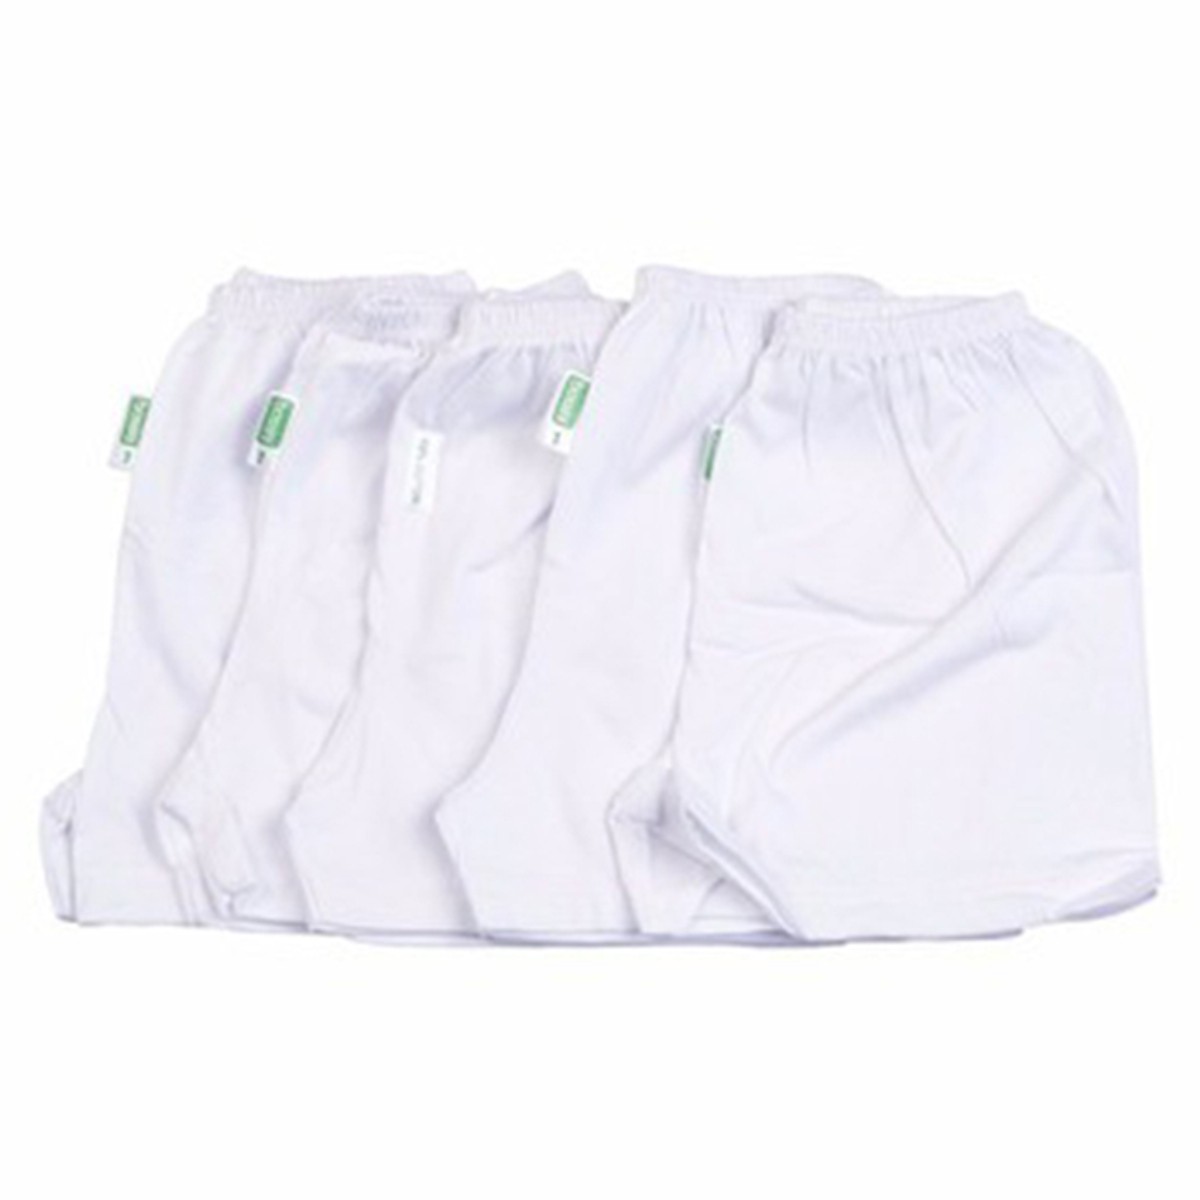 5 quần ngắn trắng cho bé sơ sinh (2-13kg)